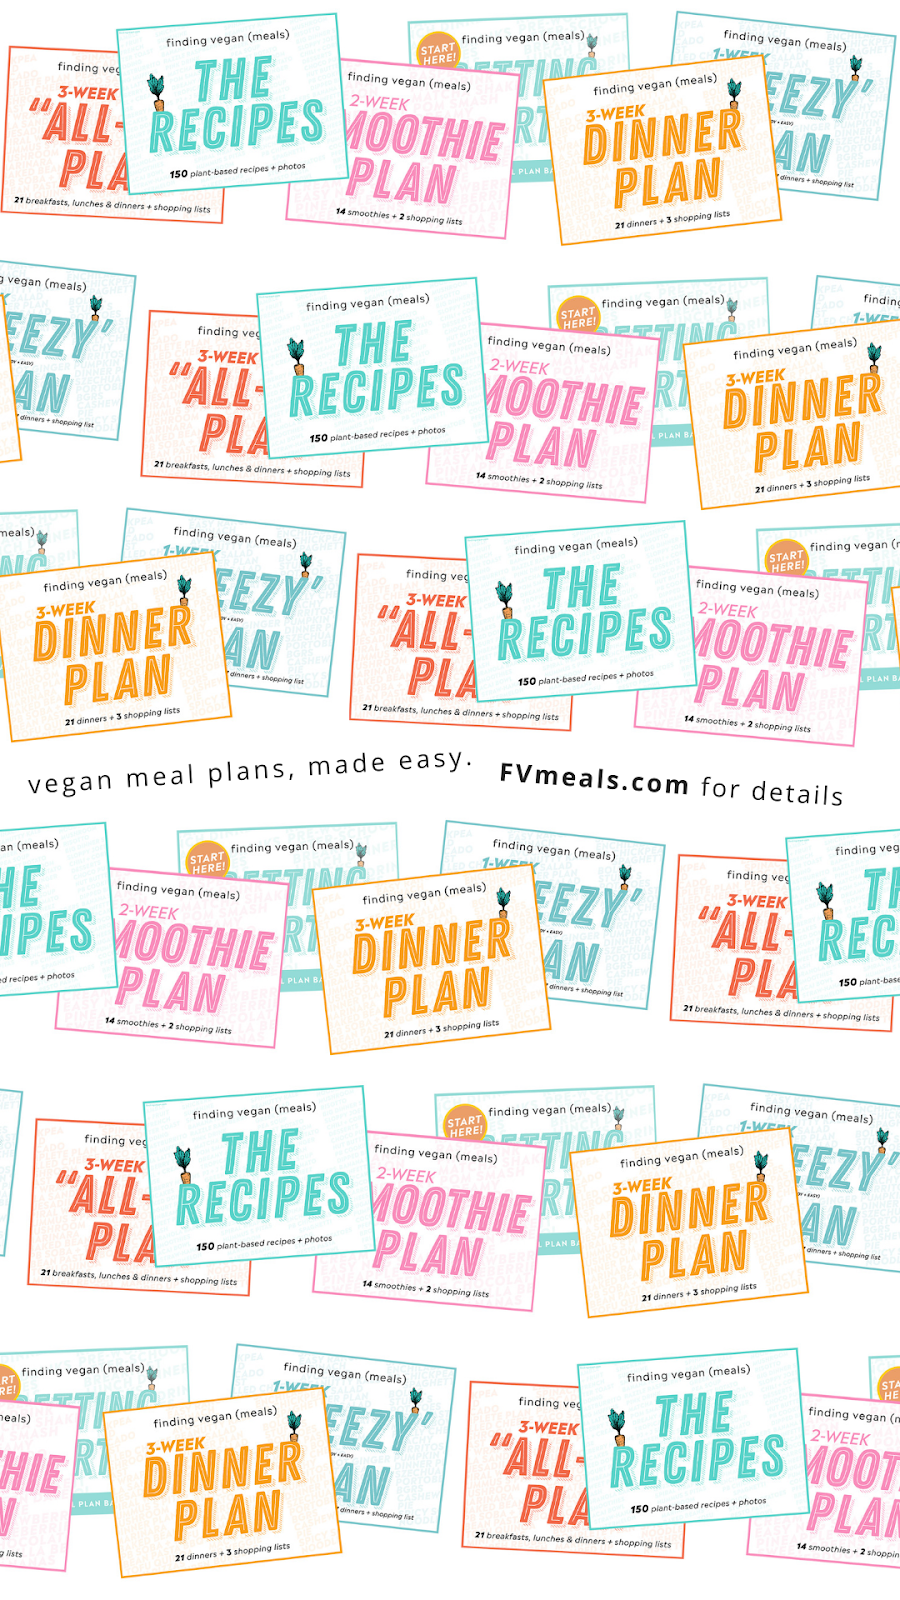 finding vegan meals - meal plans